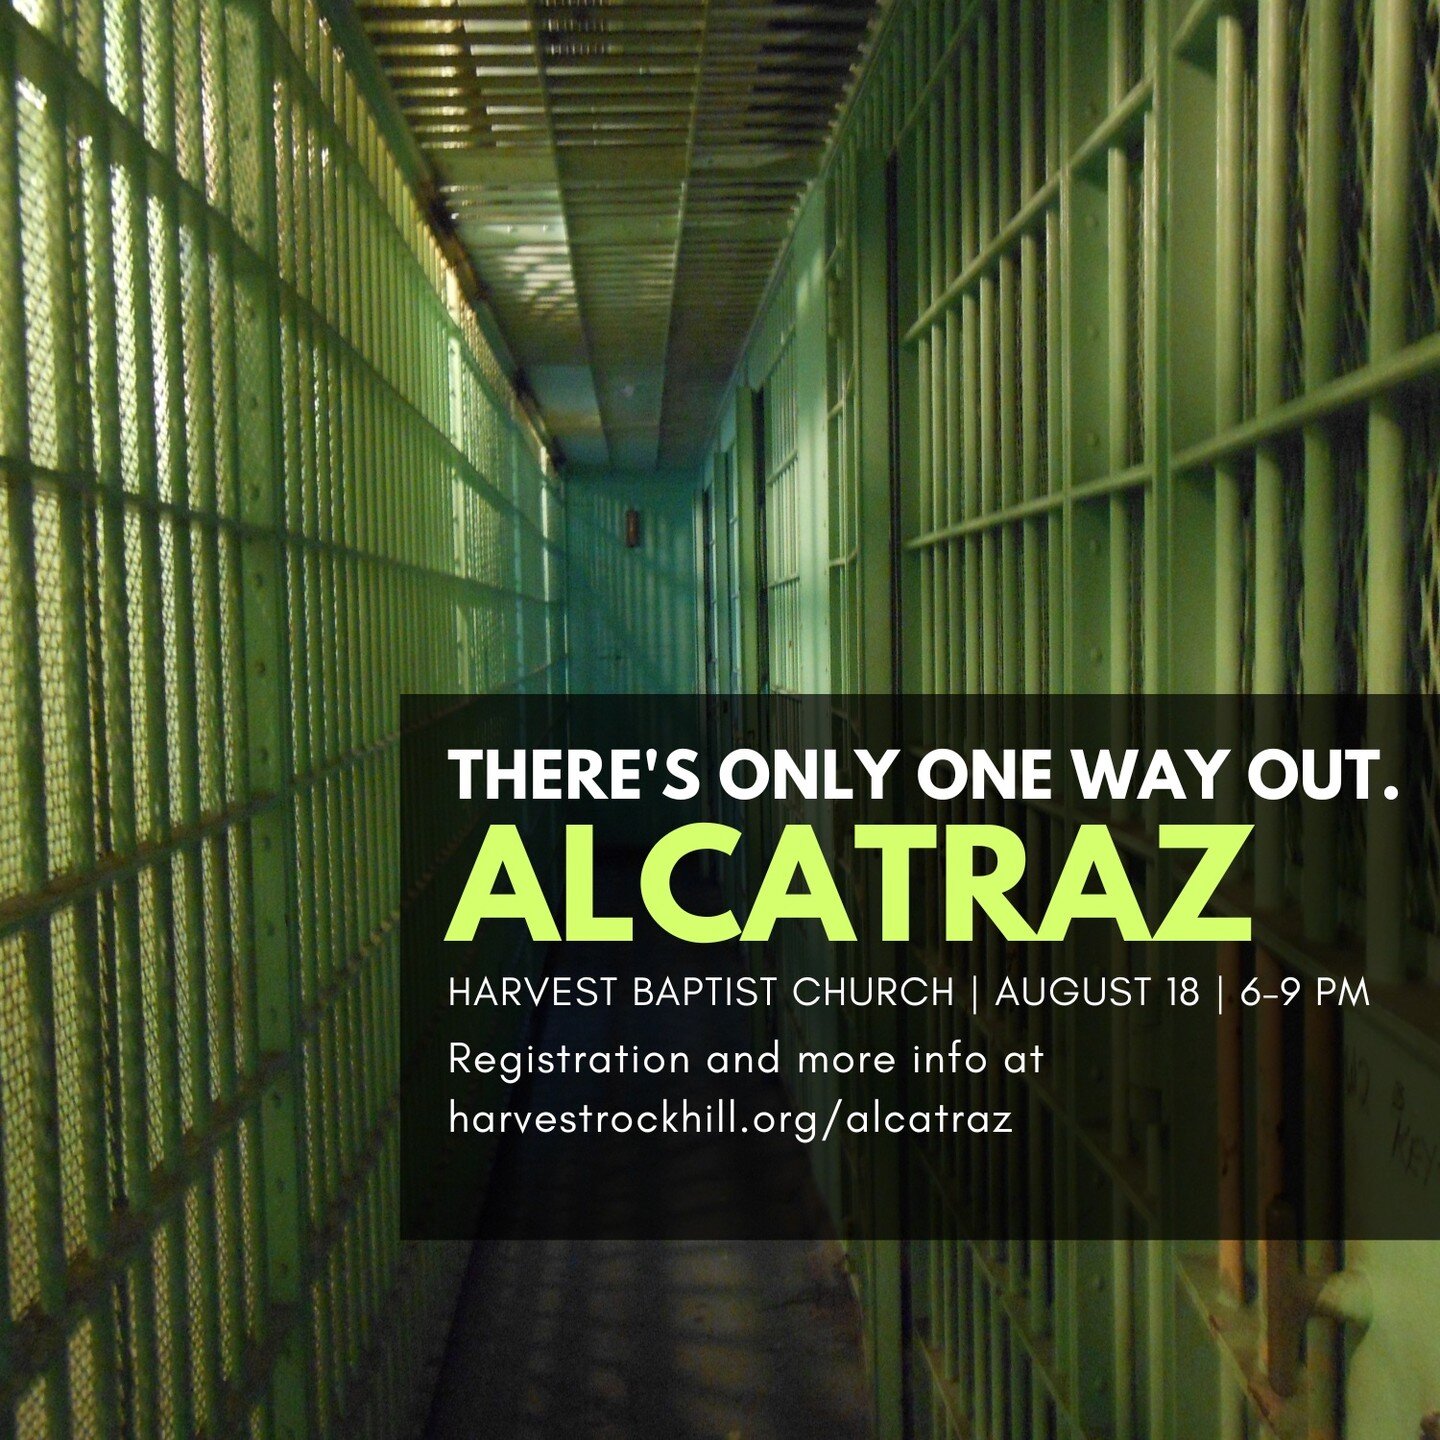 ALCATRAZ is next week! Register at harvestrockhill.org/alcatraz.